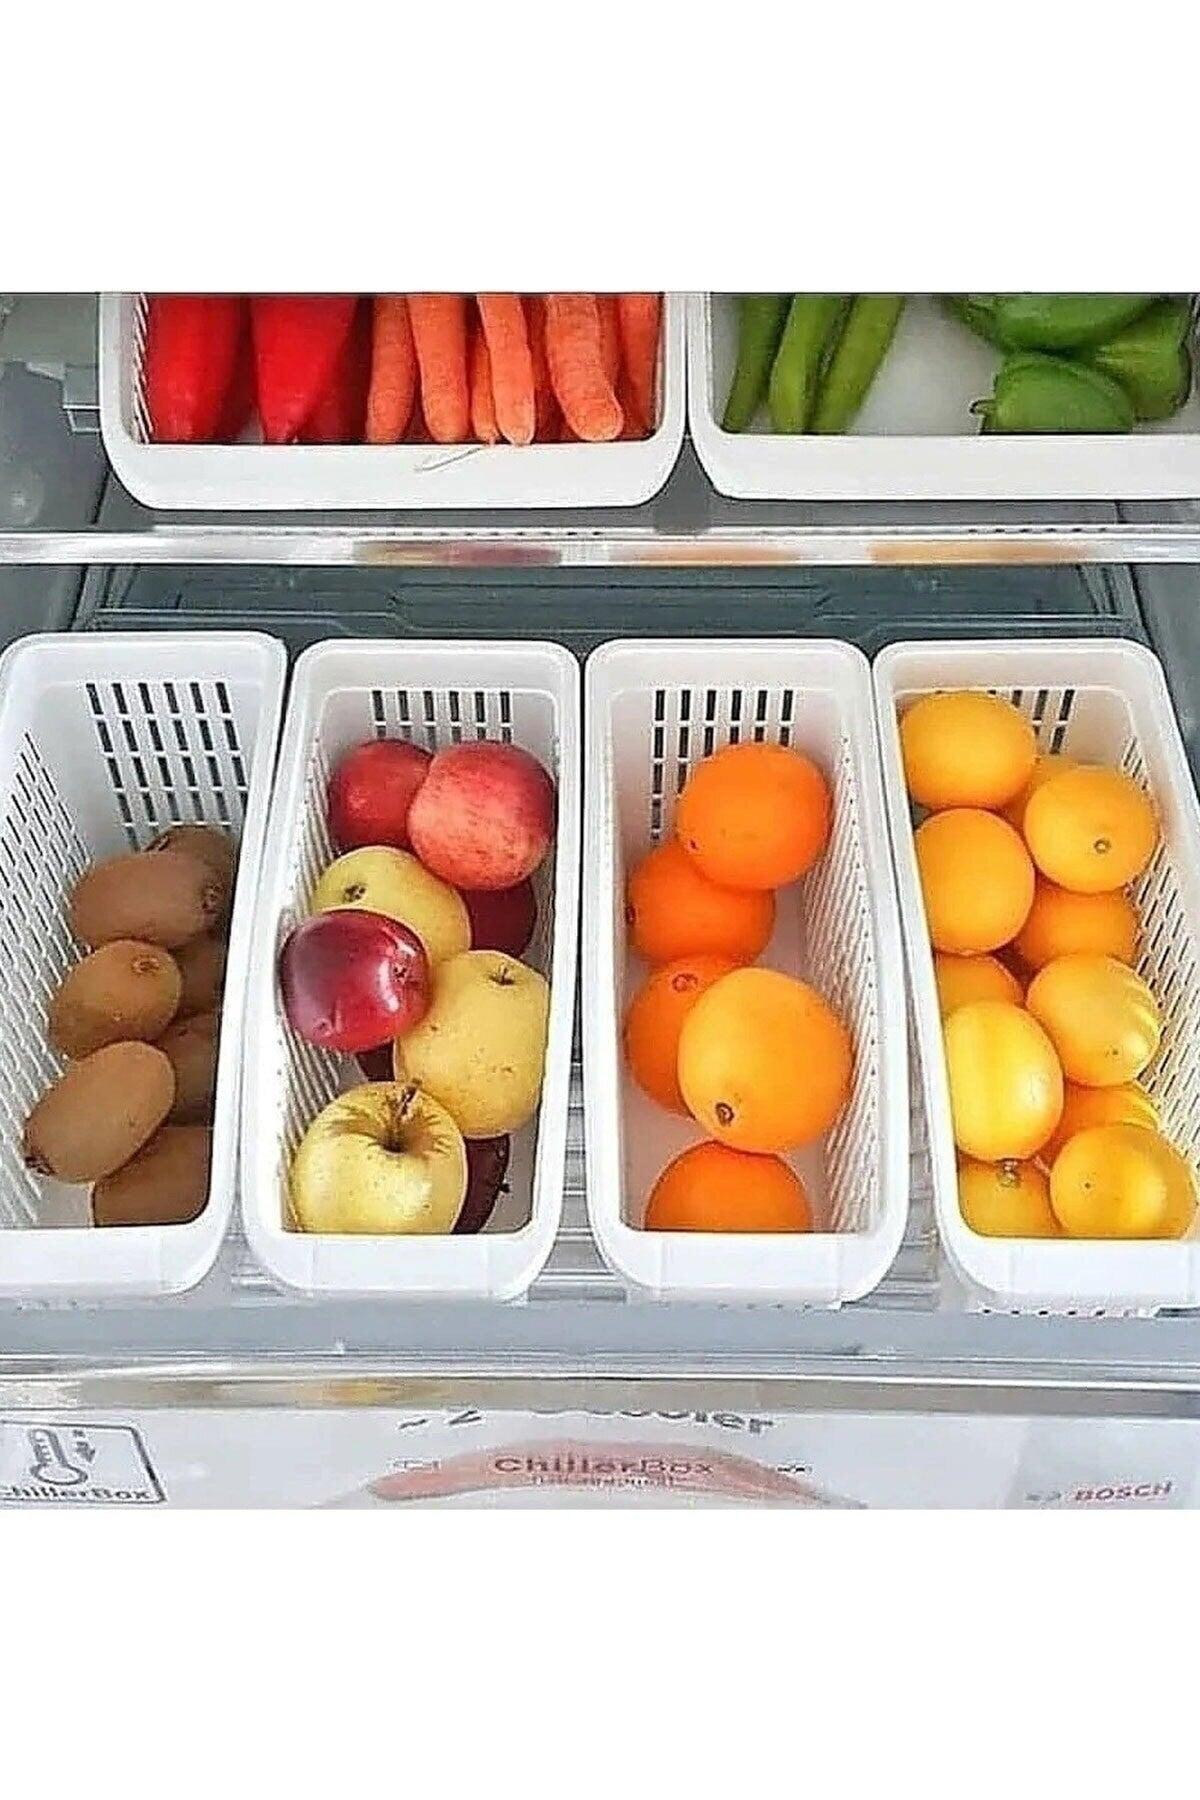 5 Piece Gondola Refrigerator Organizer Vegetable Fruit Basket Kitchen Bathroom Under Counter Organizer - Swordslife